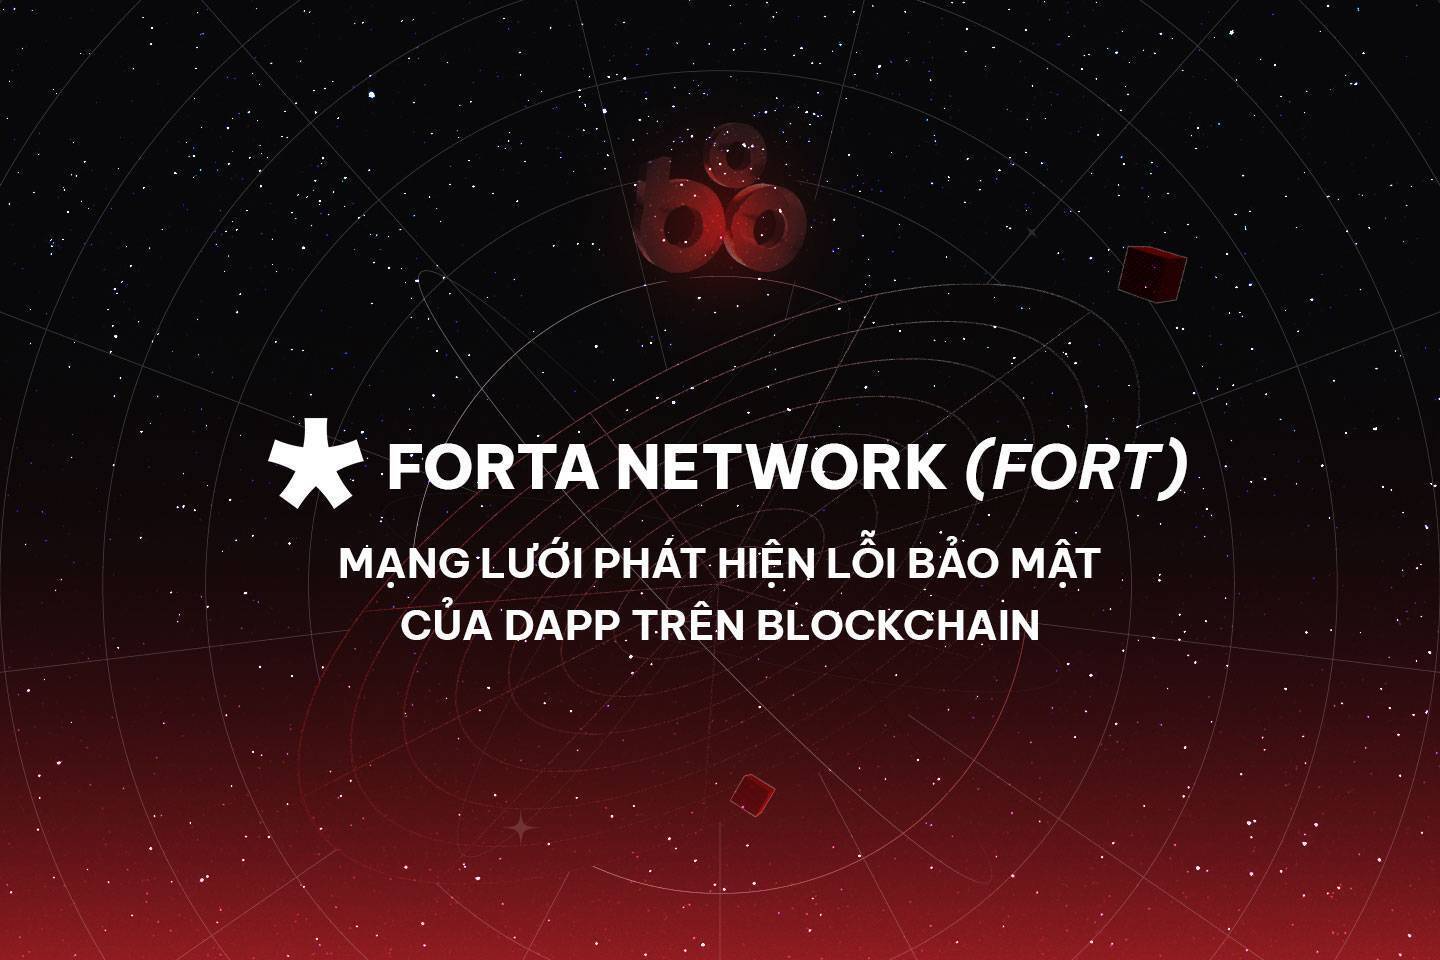 Forta Network fort - Mạng Lưới Phát Hiện Lỗi Bảo Mật Của Dapp Trên Blockchain